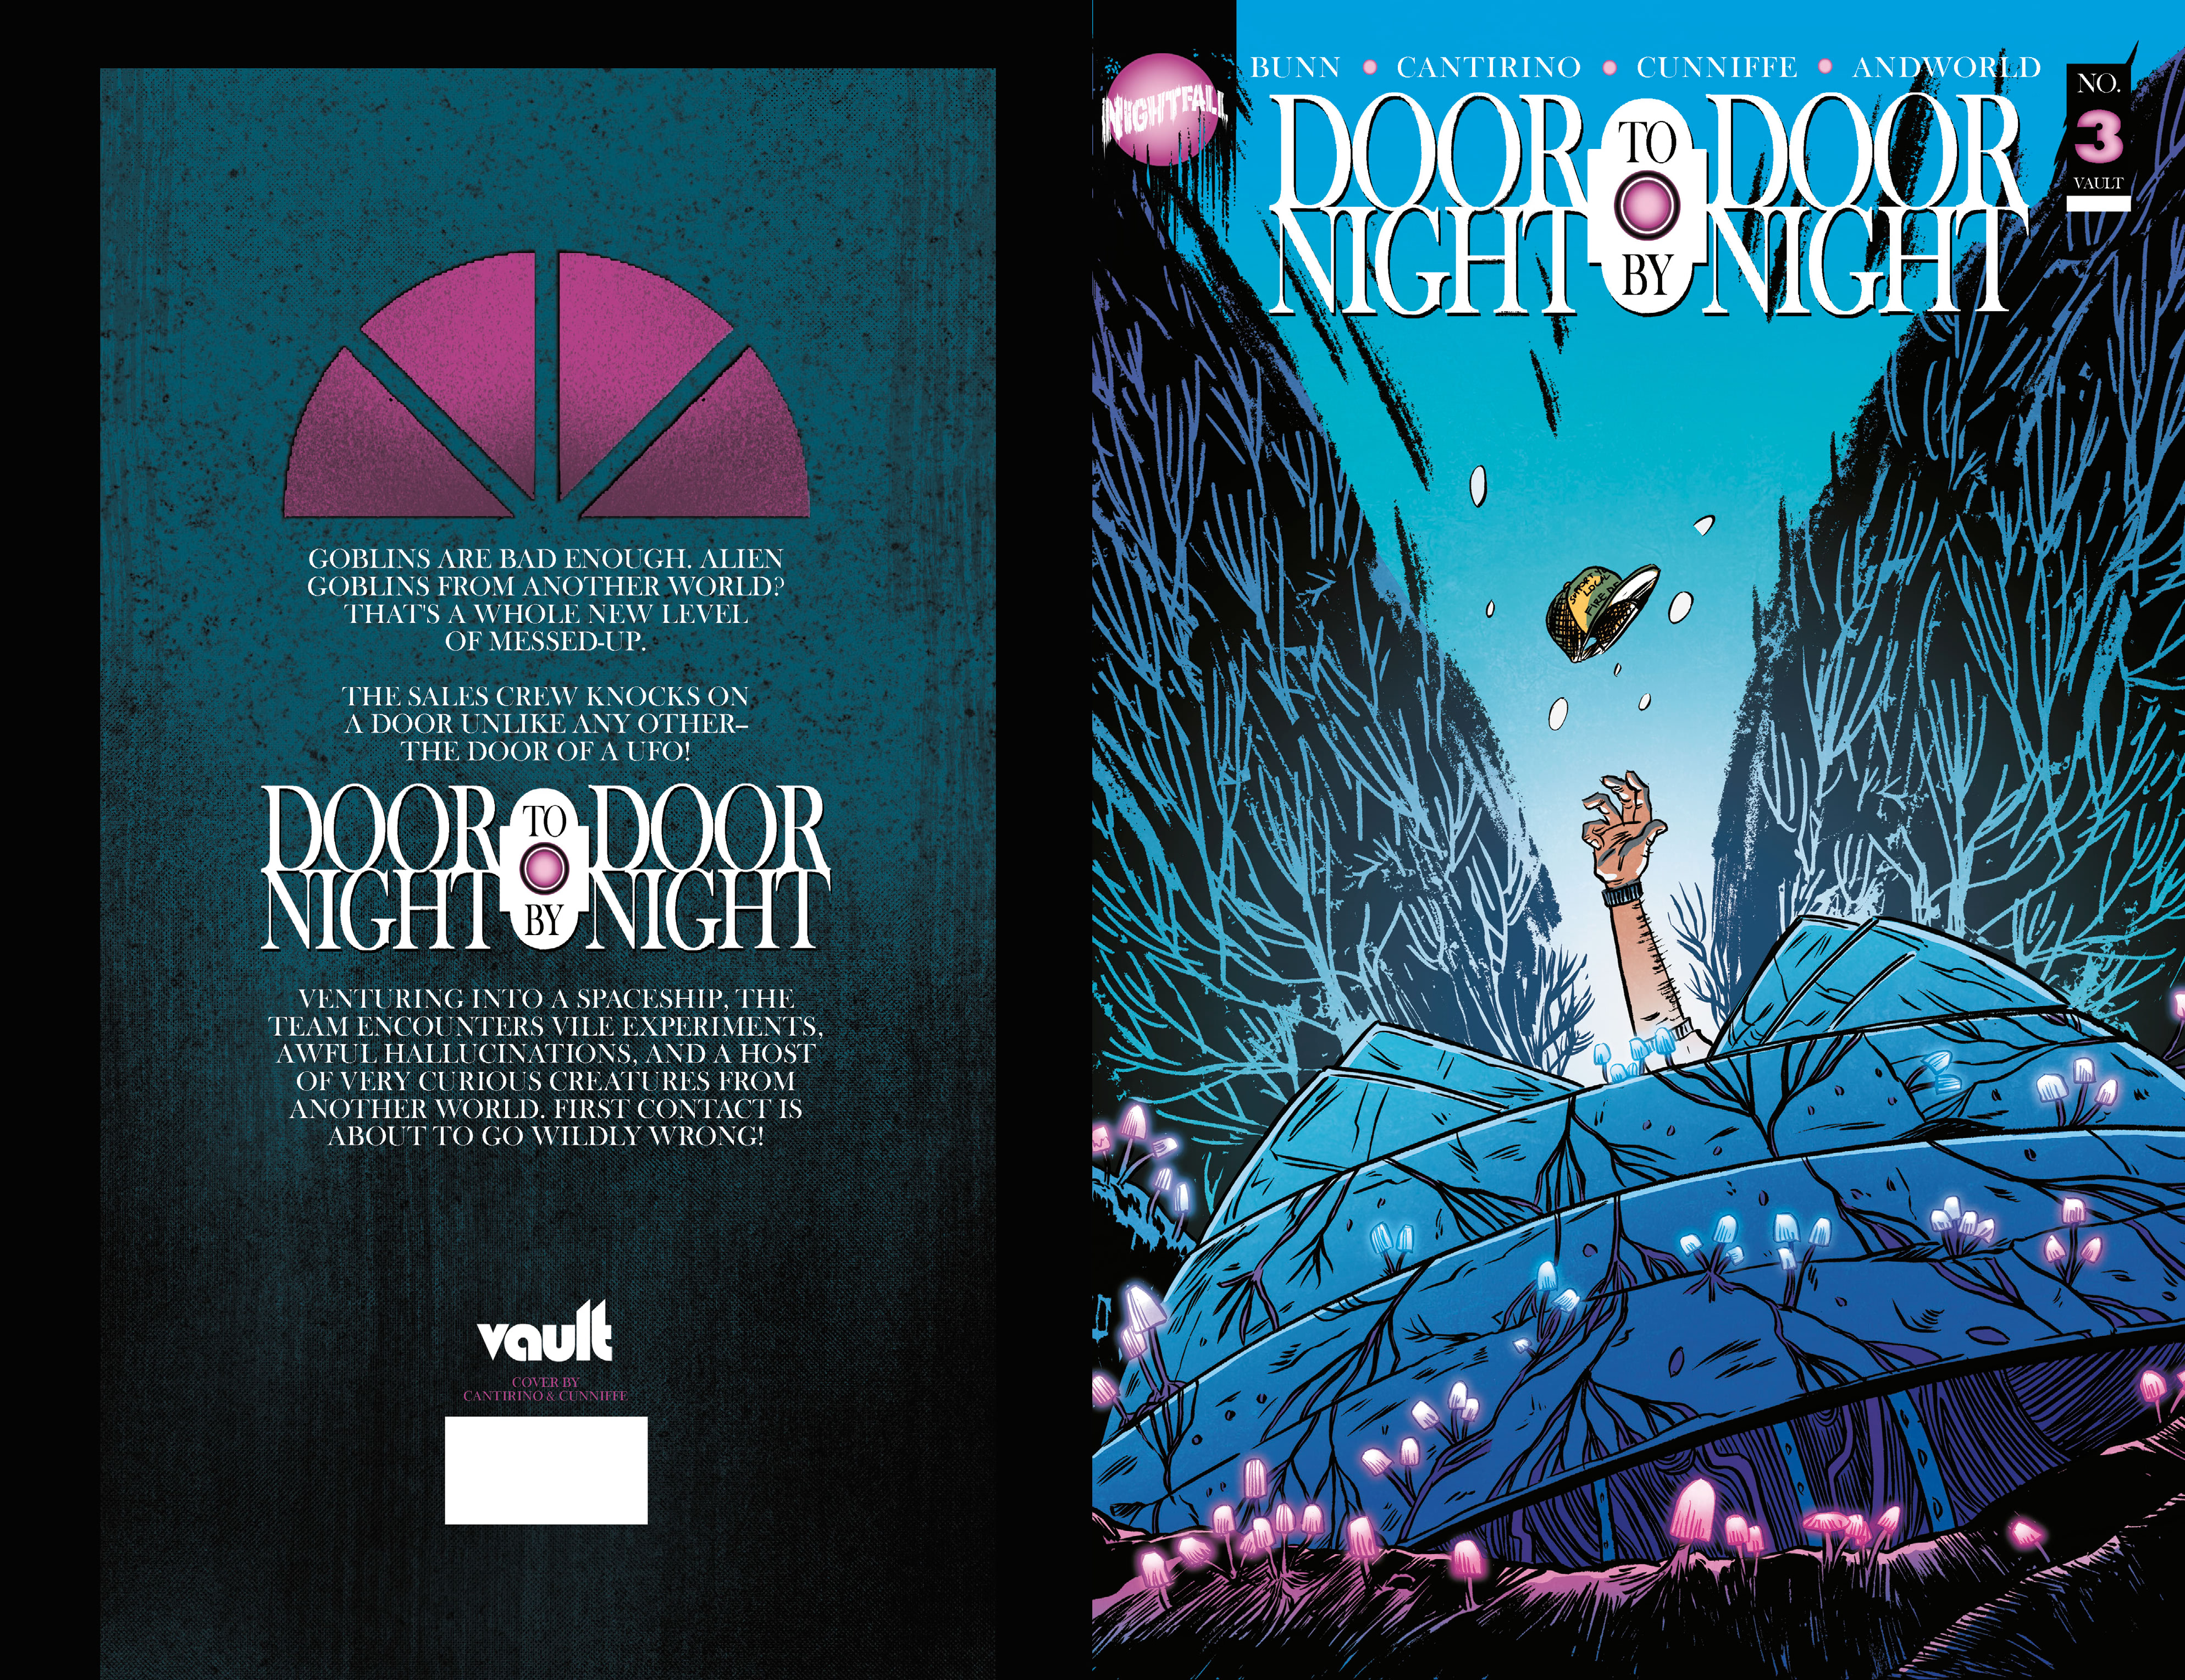 Read online Door to Door, Night by Night comic -  Issue #3 - 1